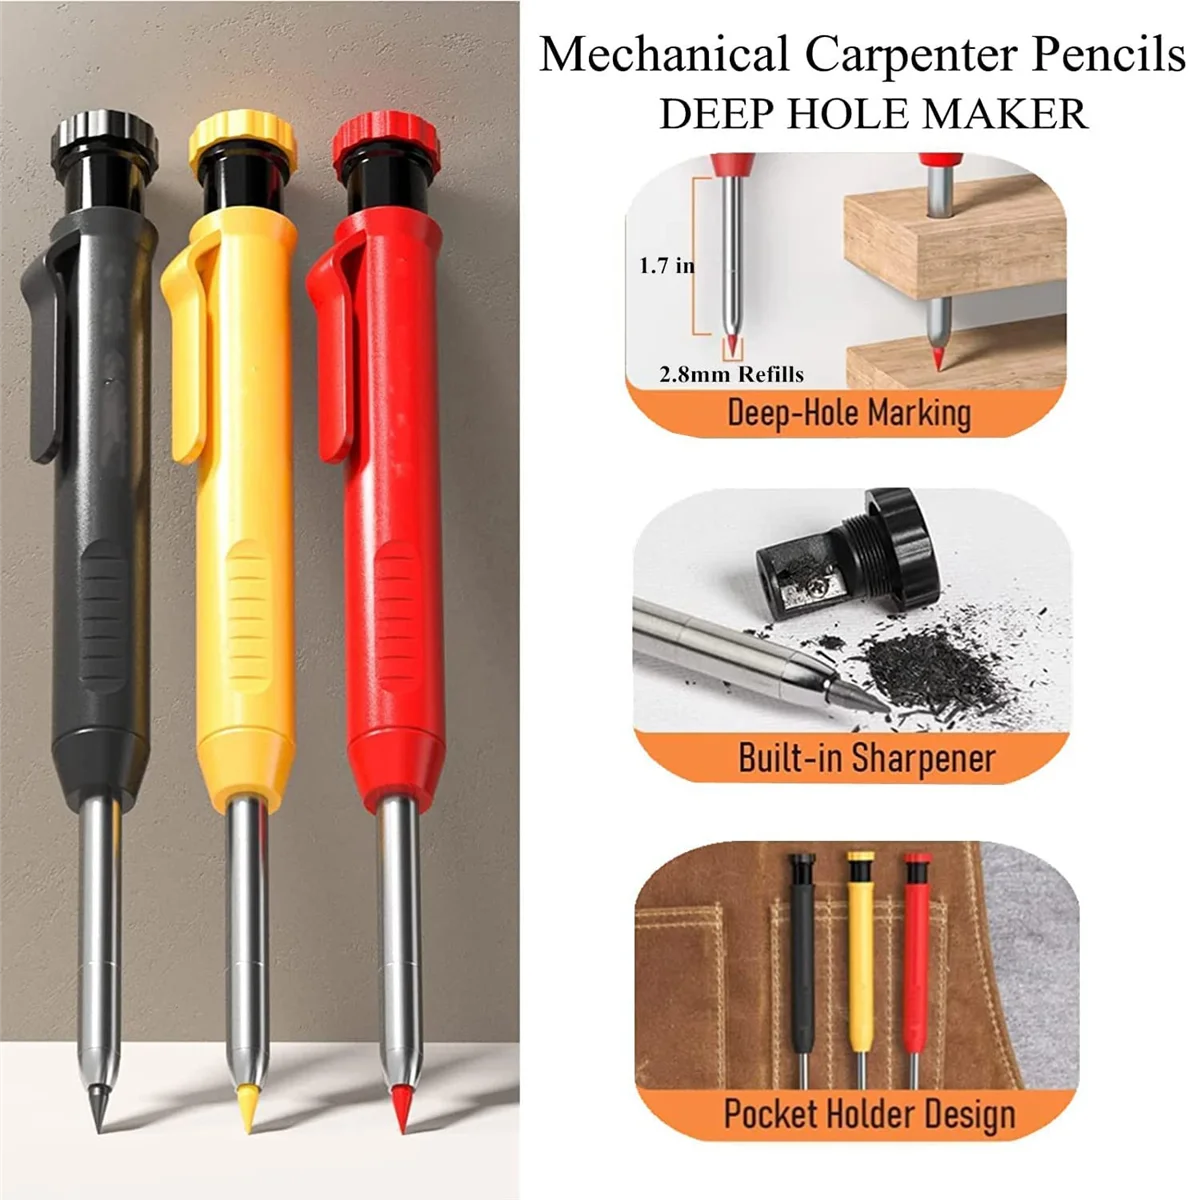 Набор механических плотницких карандашей с заправкой для маркеров, плотницкий твердосплавный инструмент для рисования, Деревообрабатывающие карандаши, маркерные инструменты - 5